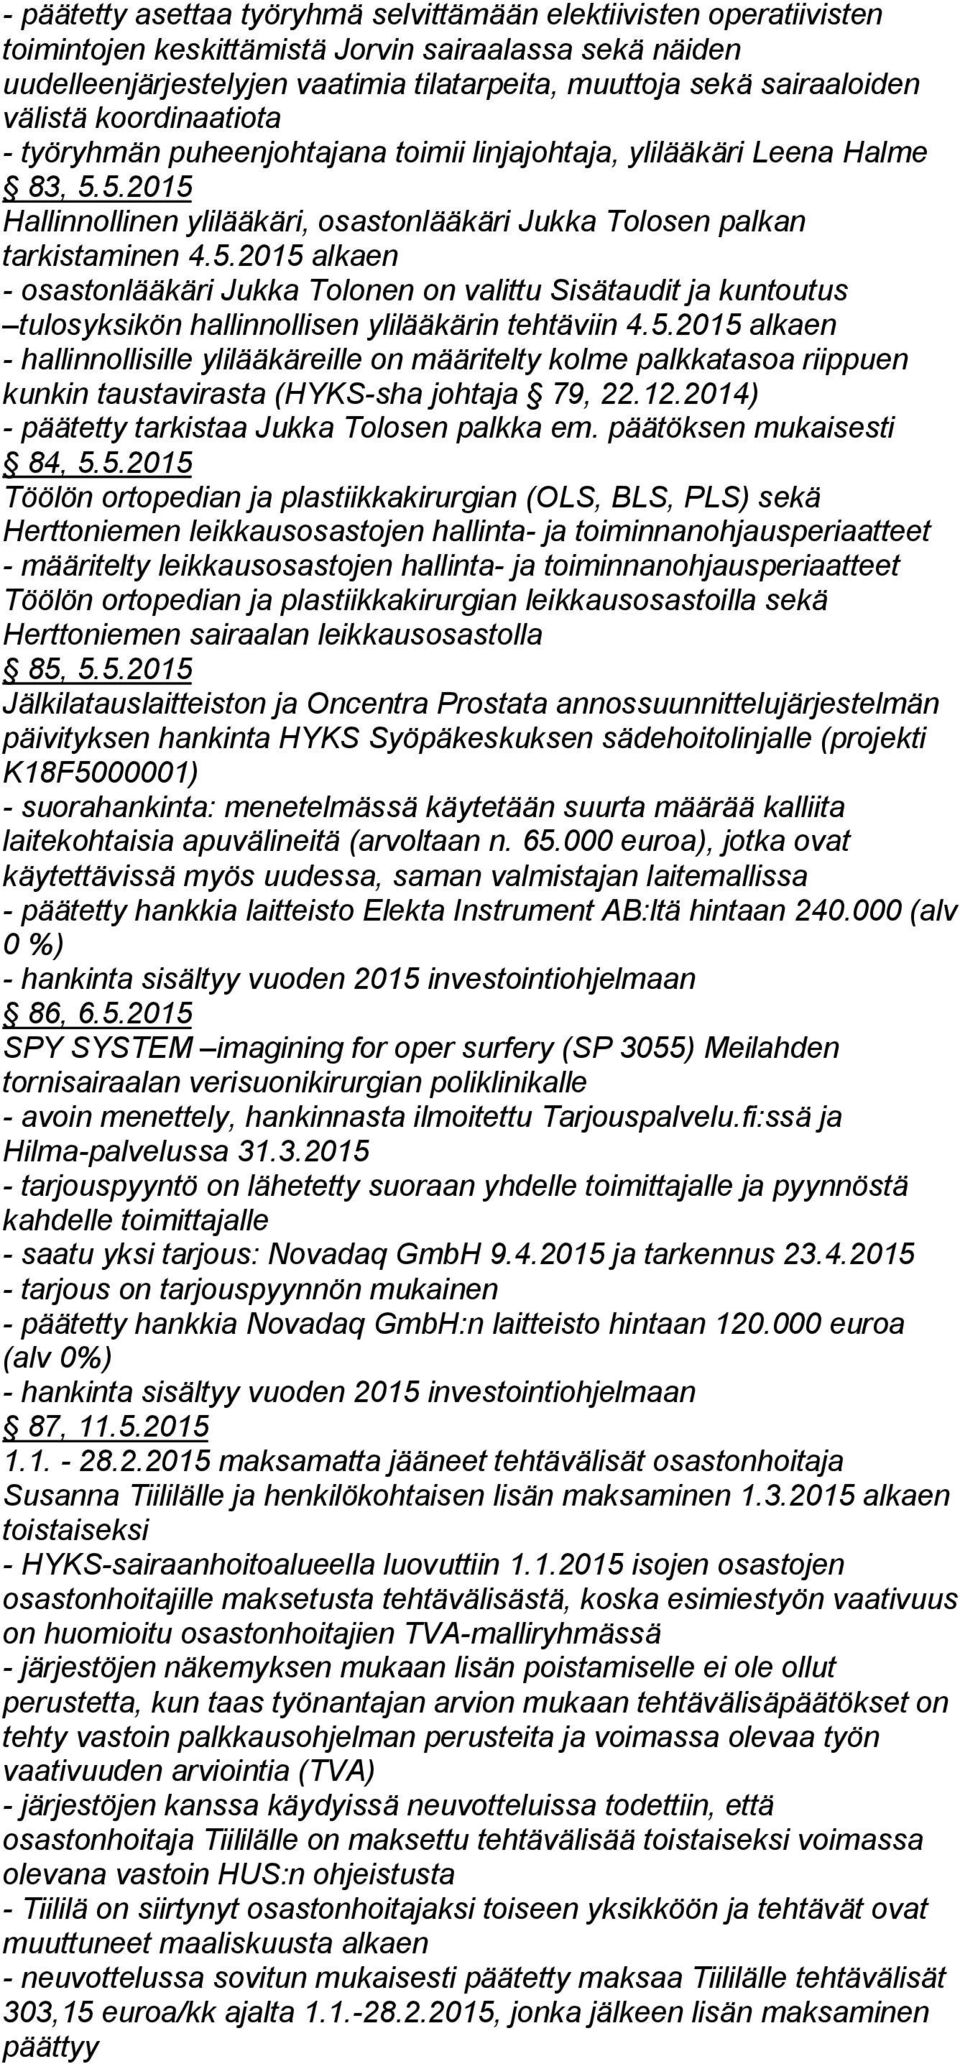 5.2015 alkaen - osastonlääkäri Jukka Tolonen on valittu Sisätaudit ja kuntoutus tulosyksi kön hallinnollisen ylilääkärin tehtäviin 4.5.2015 alkaen - hallinnollisille ylilääkäreille on määritelty kolme palkkatasoa riippuen kunkin taustavirasta (HYKS-sha johtaja 79, 22.